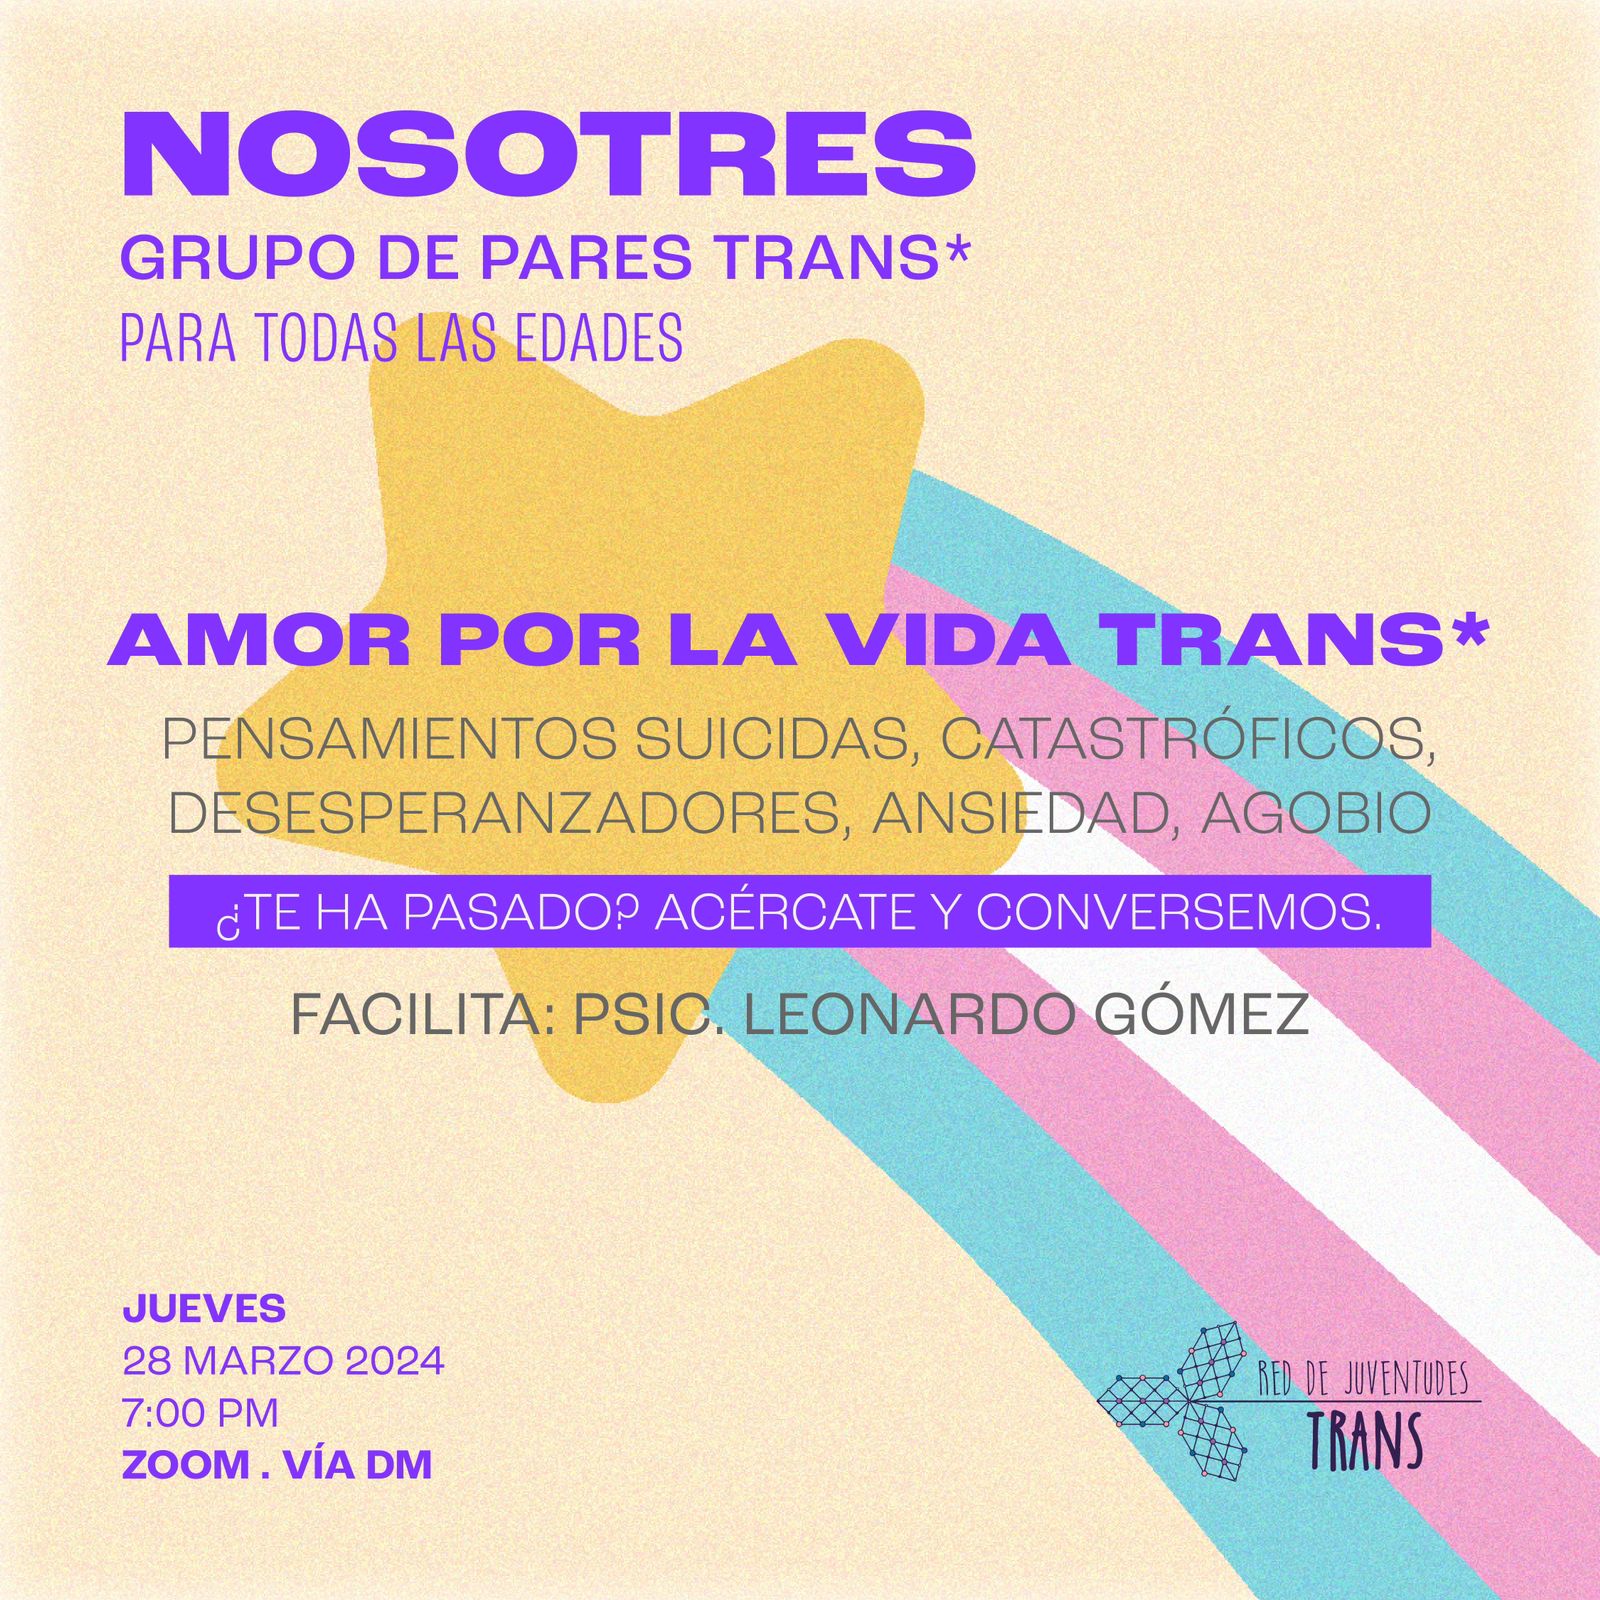 Grupo_de_pares_trans